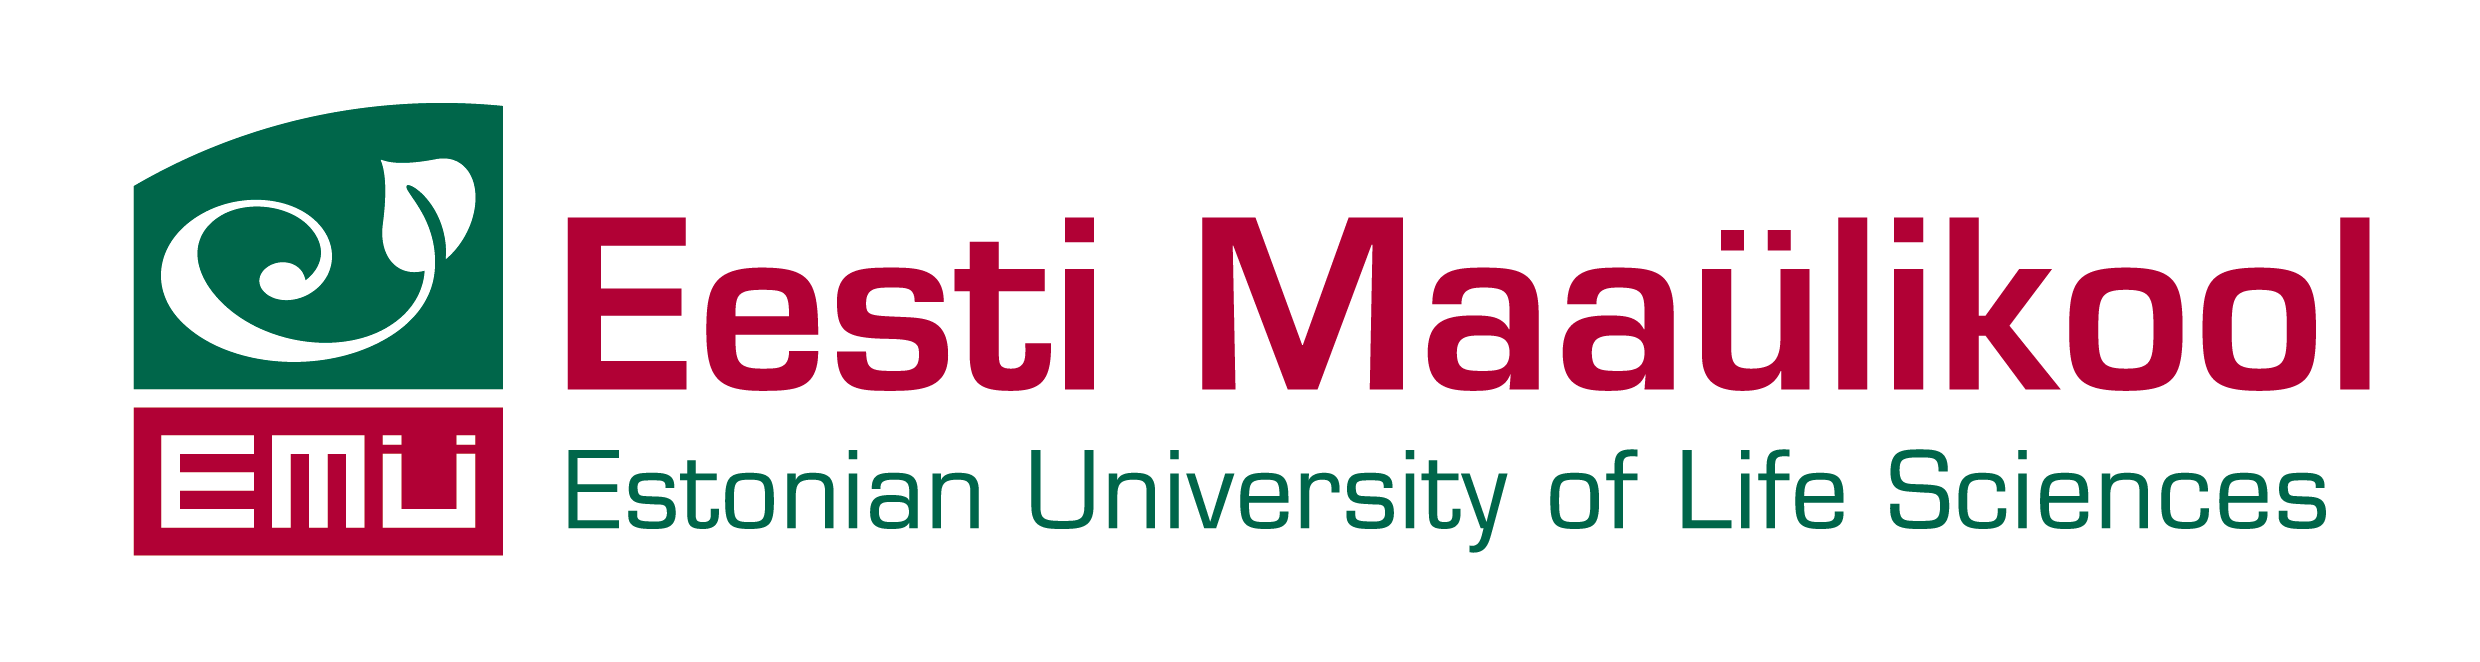 Eesti Maaülikool